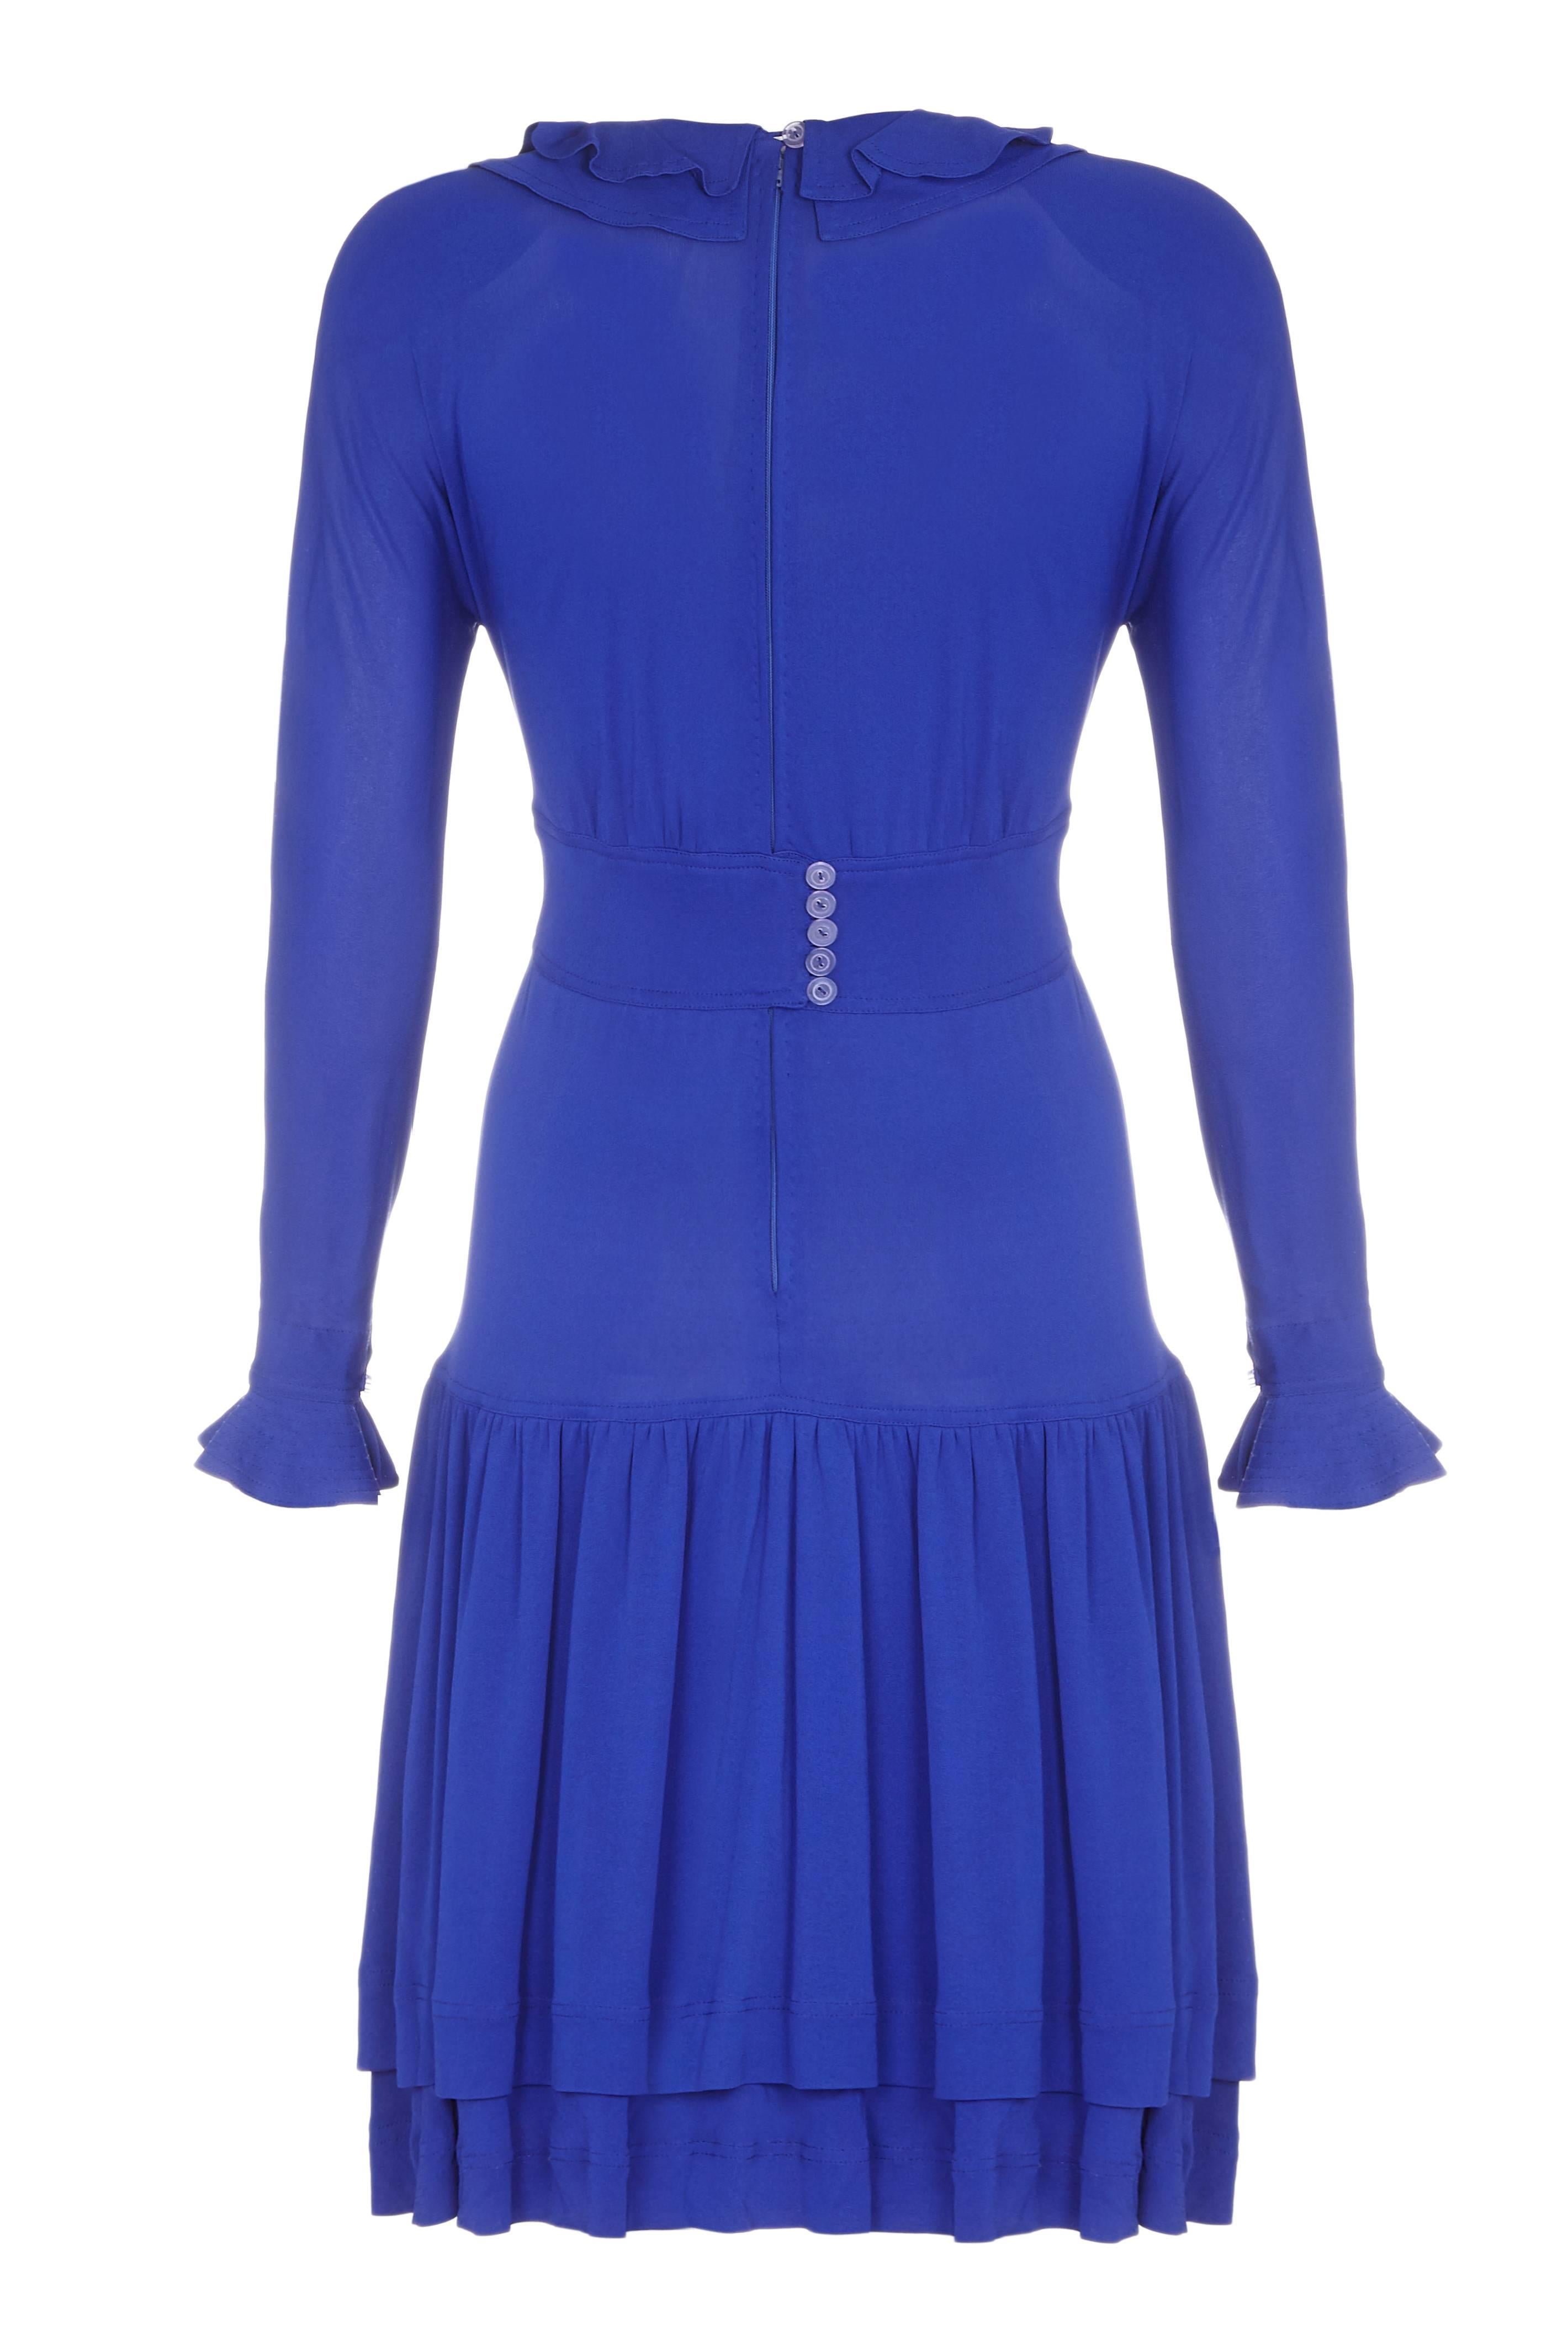 Cette robe en jersey bleu royal des années 1980 est signée de l'iconique designer britannique Jean Muir. Elle est en parfait état vintage et présente de jolis motifs. La robe est à manches longues avec une garniture à volants aux poignets et un